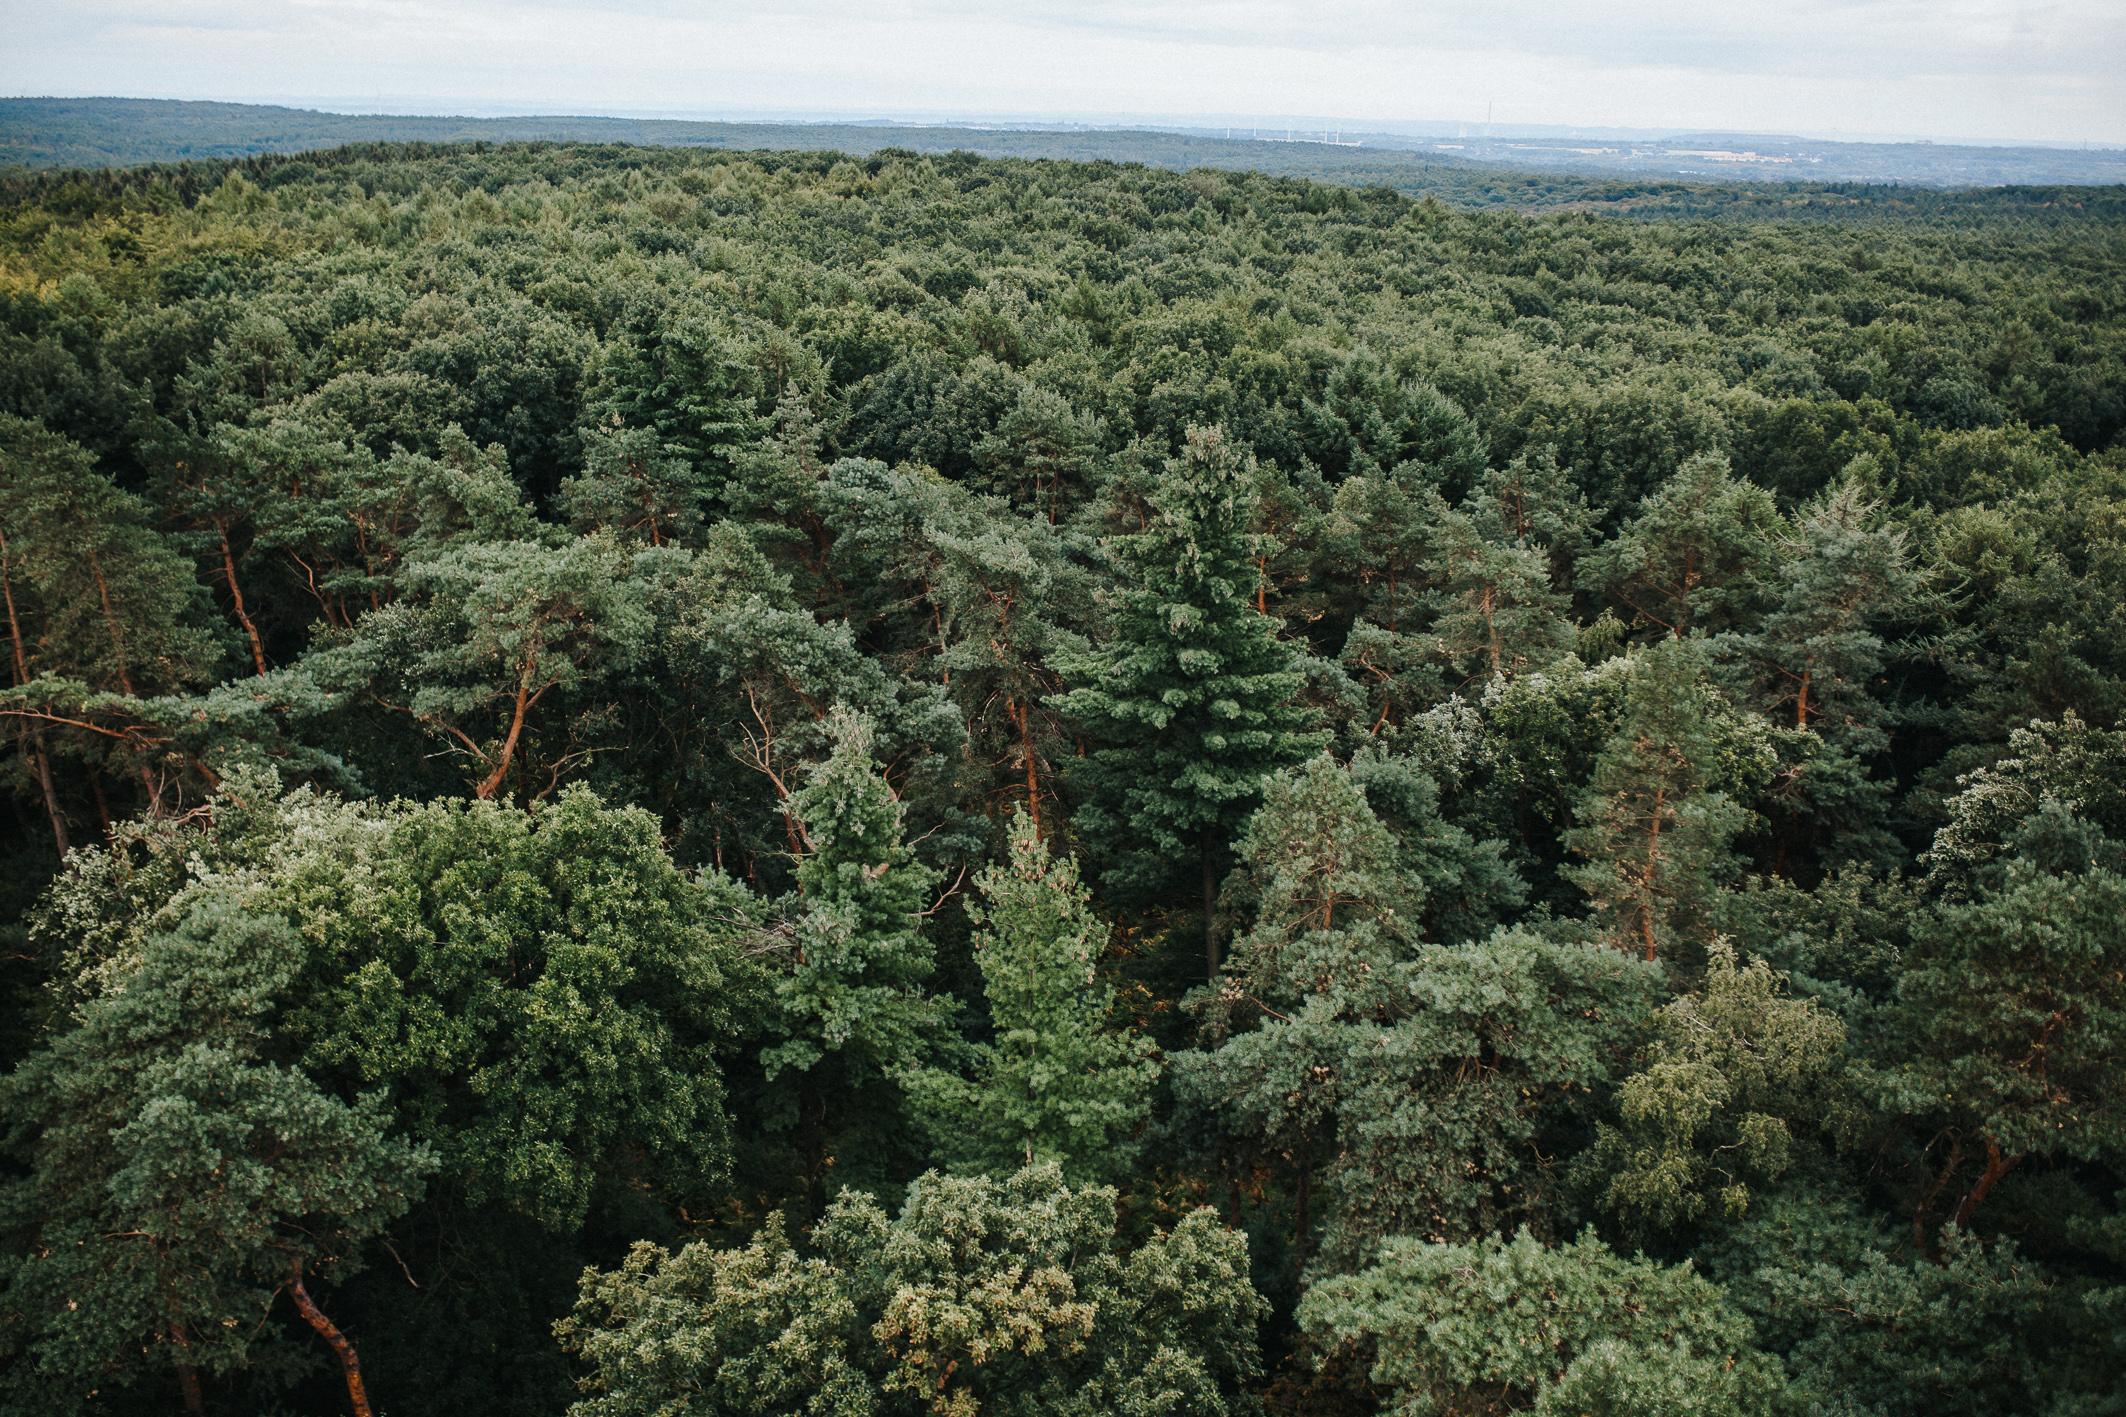 Stieleiche, Rotbuche, Douglasie: RVR will in 5 Jahren 5 Mio. Bäume pflanzen und „grünste Industrieregion der Welt werden“